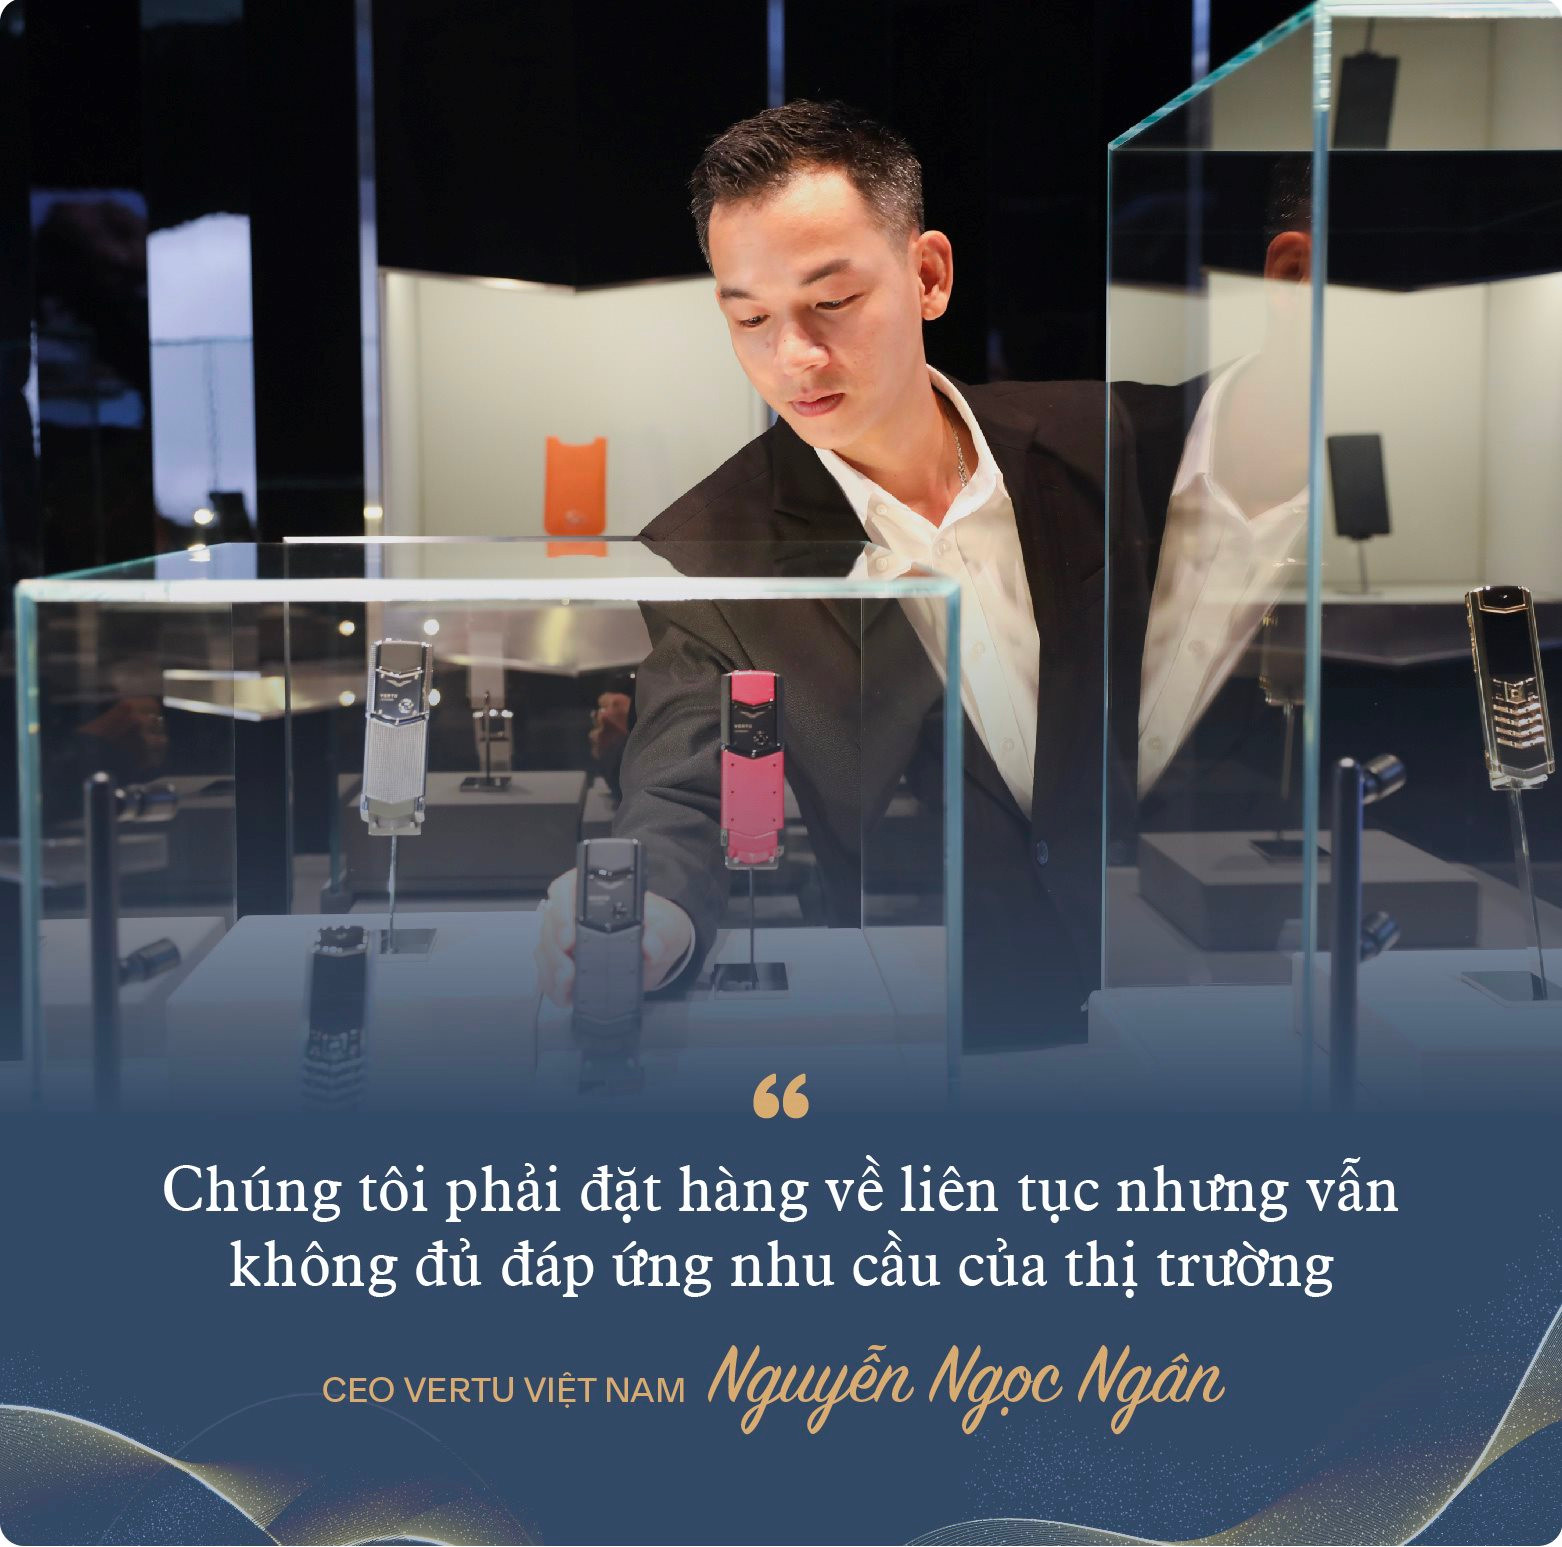 CEO Vertu Việt Nam: 'Điện thoại siêu sang vẫn bán chạy, dù kinh tế khó khăn đến mấy' - Ảnh 3.